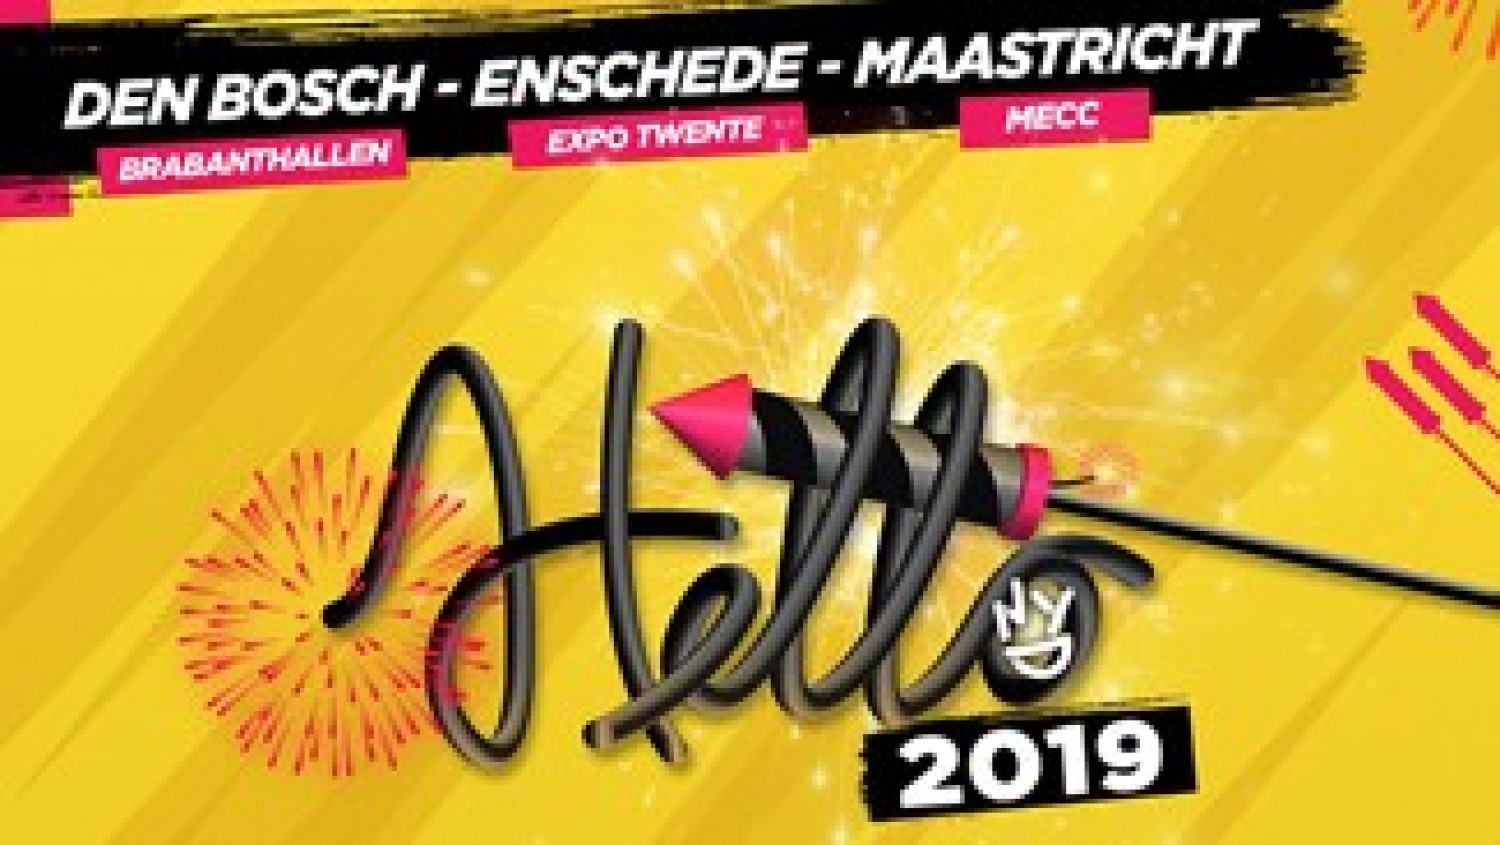 Party nieuws: HELLO 2019 in Den Bosch, Enschede en Maastricht